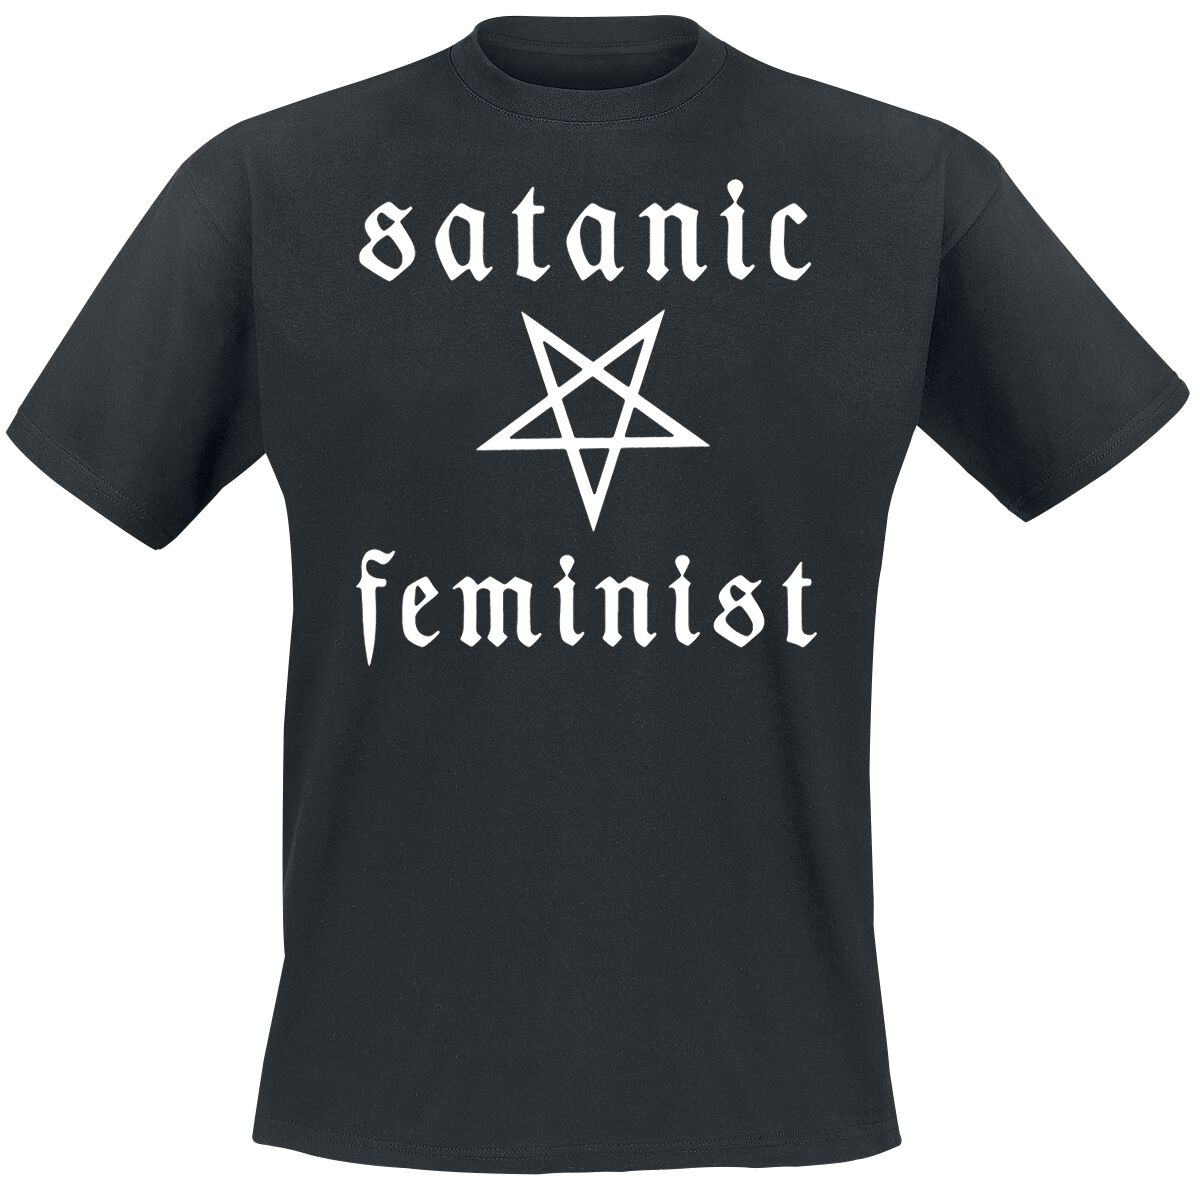 Twin Temple T-Shirt - Satanic Feminist - L bis XXL - für Männer - Größe XXL - schwarz  - Lizenziertes Merchandise!